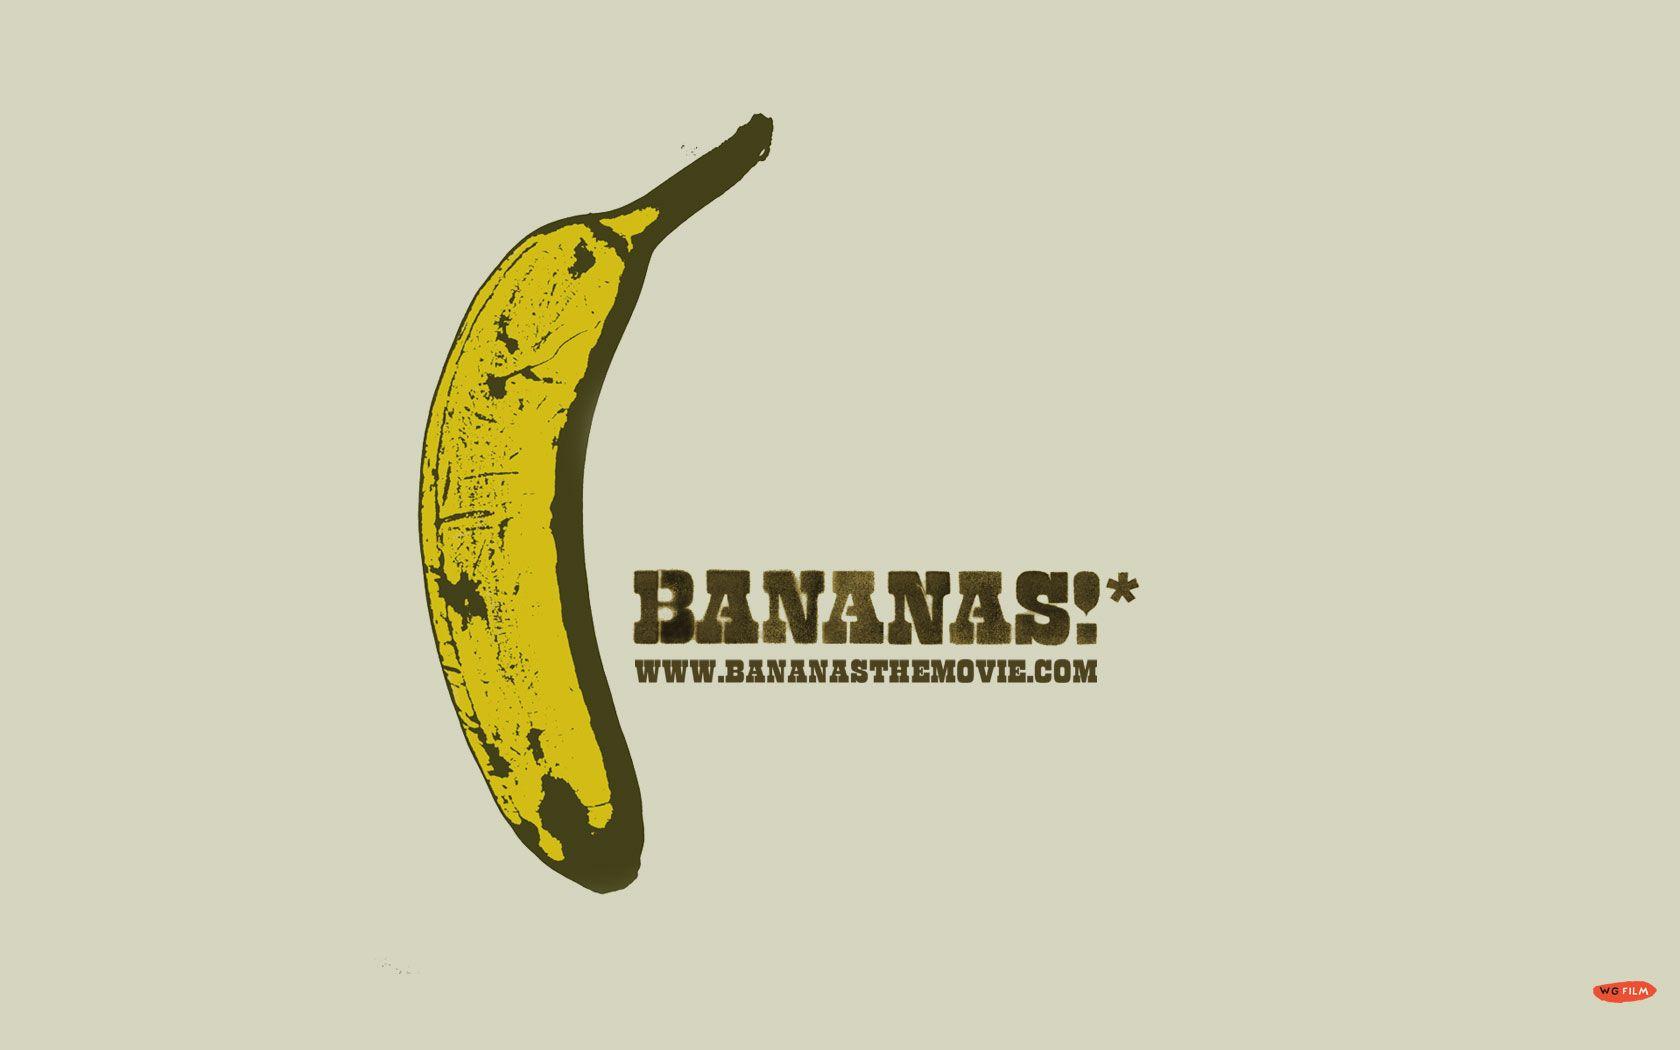 Bananas!* wallpaper. BANANAS!*